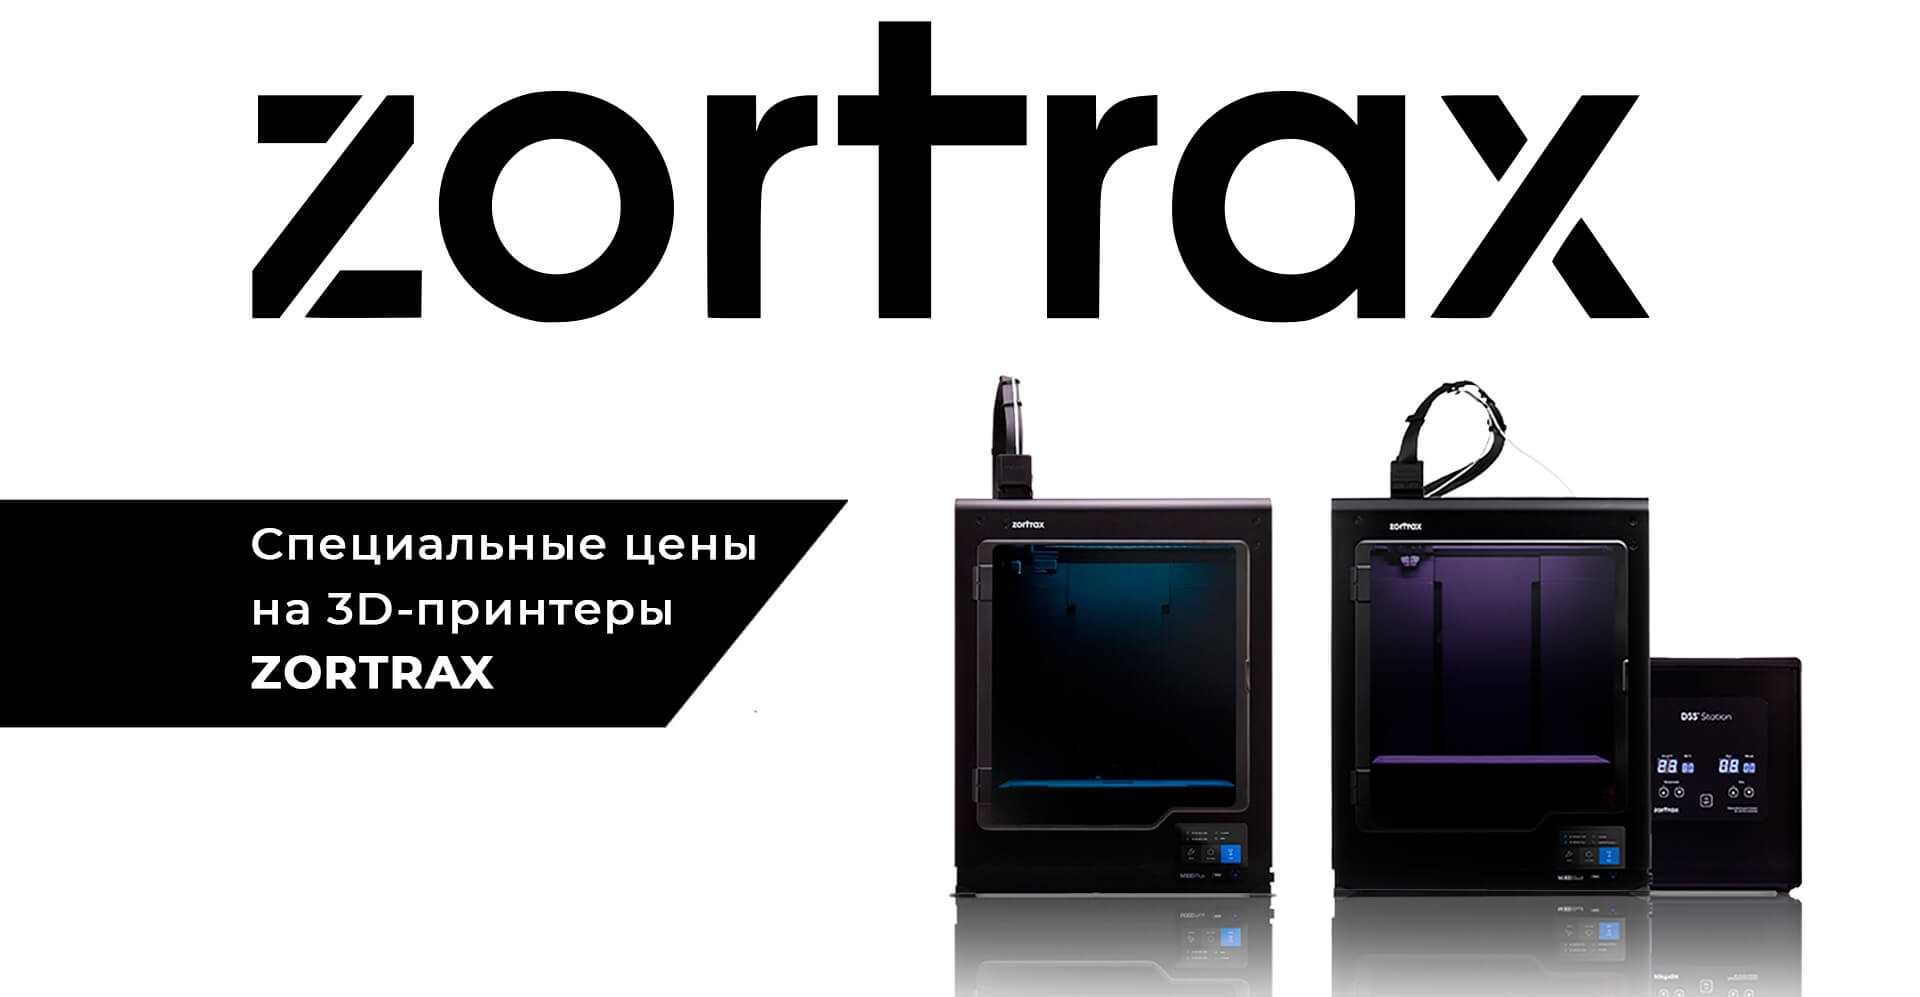 Специальные условия на покупку 3D-принтеров Zortrax!